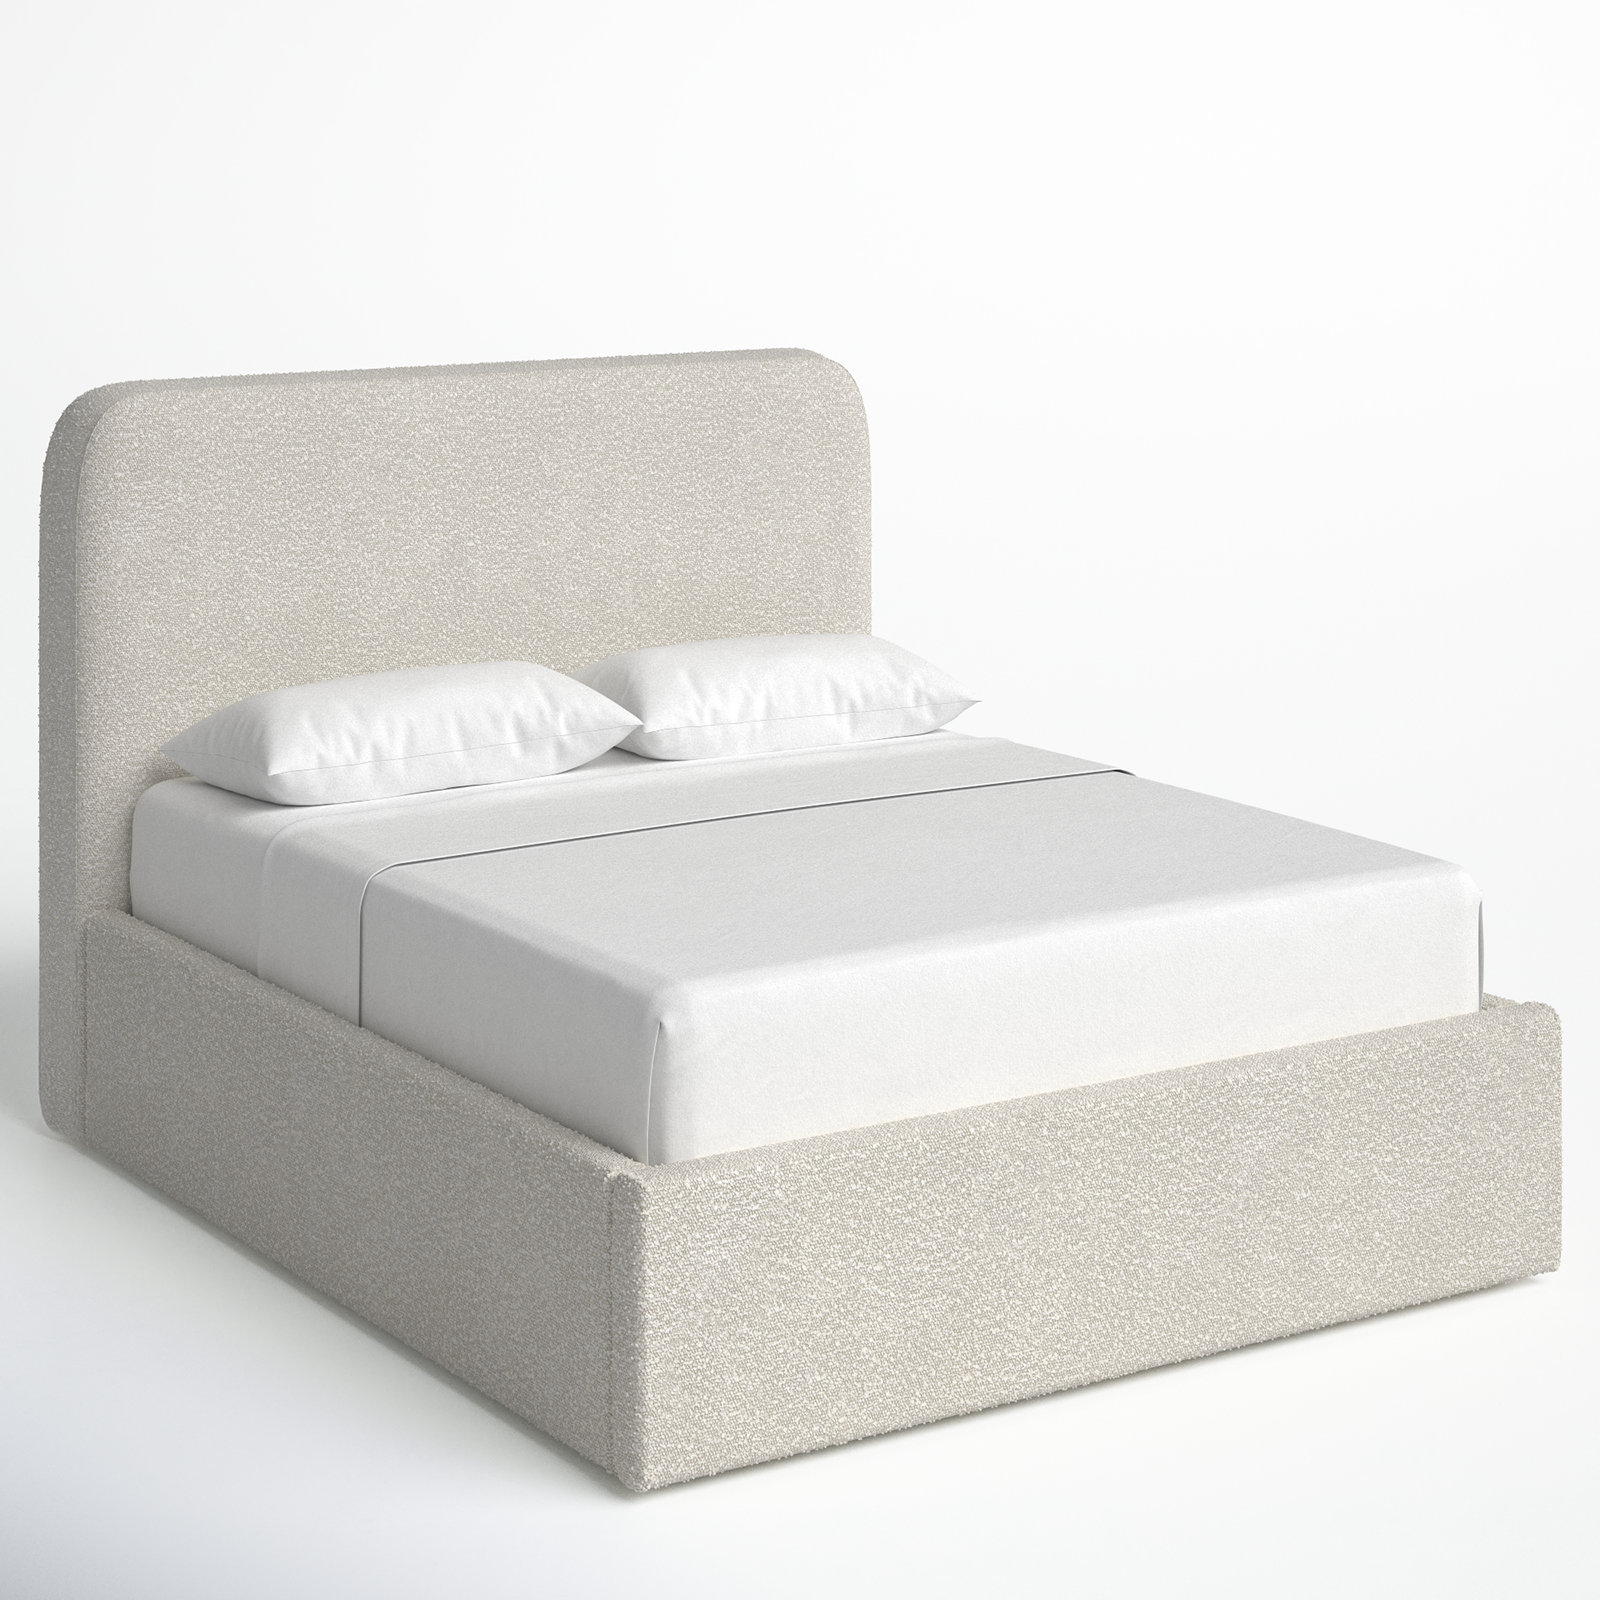 Joss & Main Bailee & Reviews Bed Platform Upholstered Wayfair 